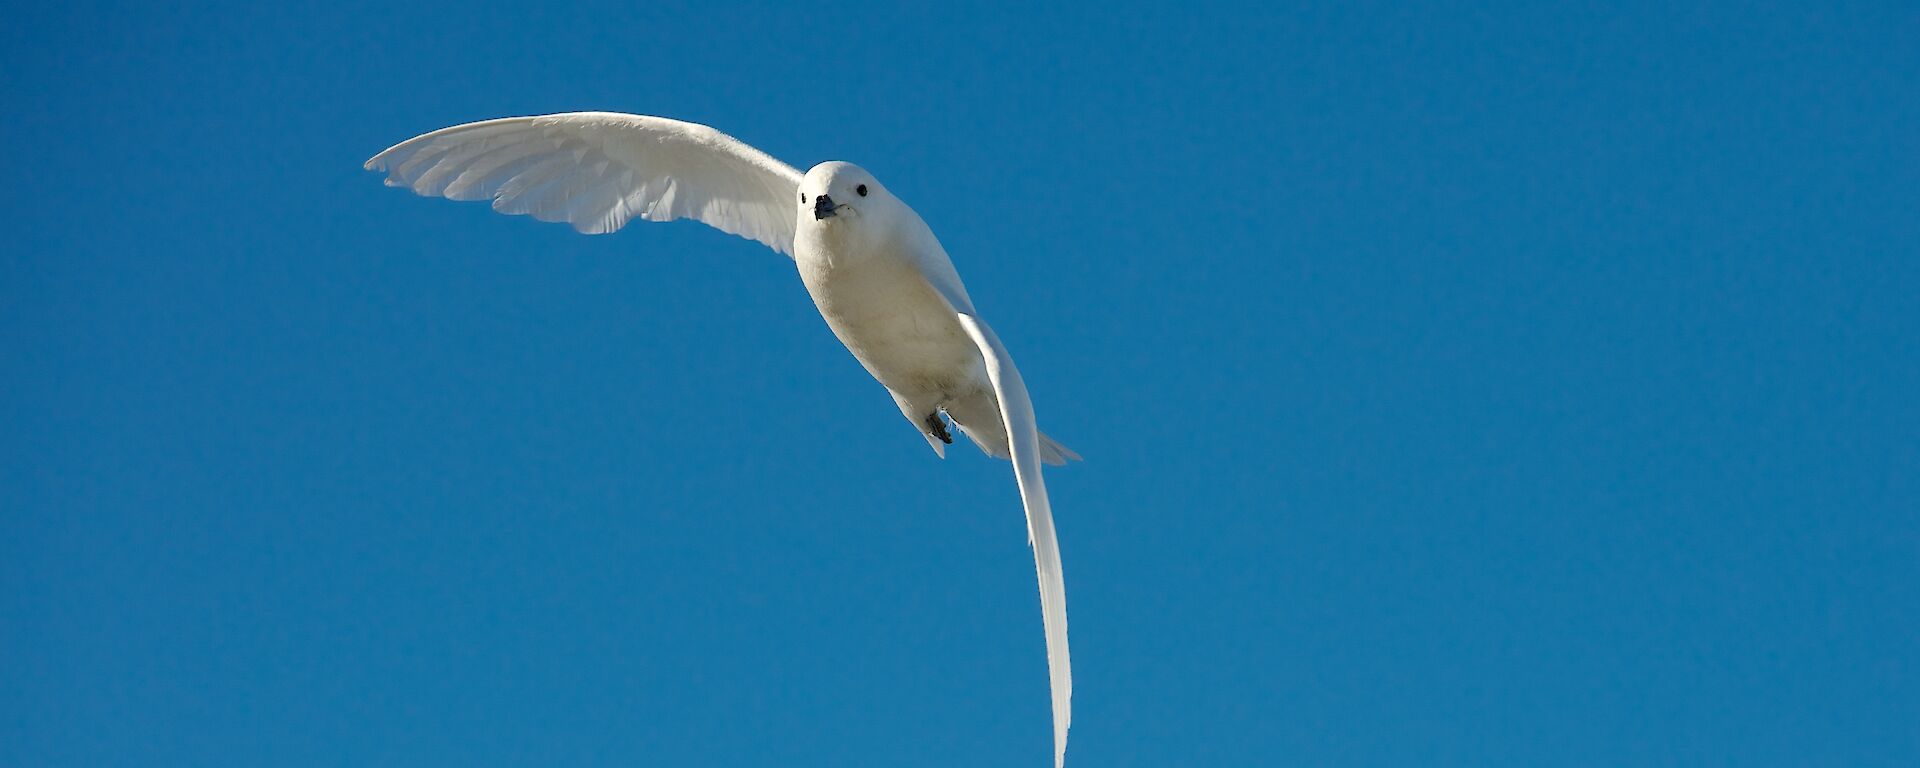 white bird in flight against blue sky